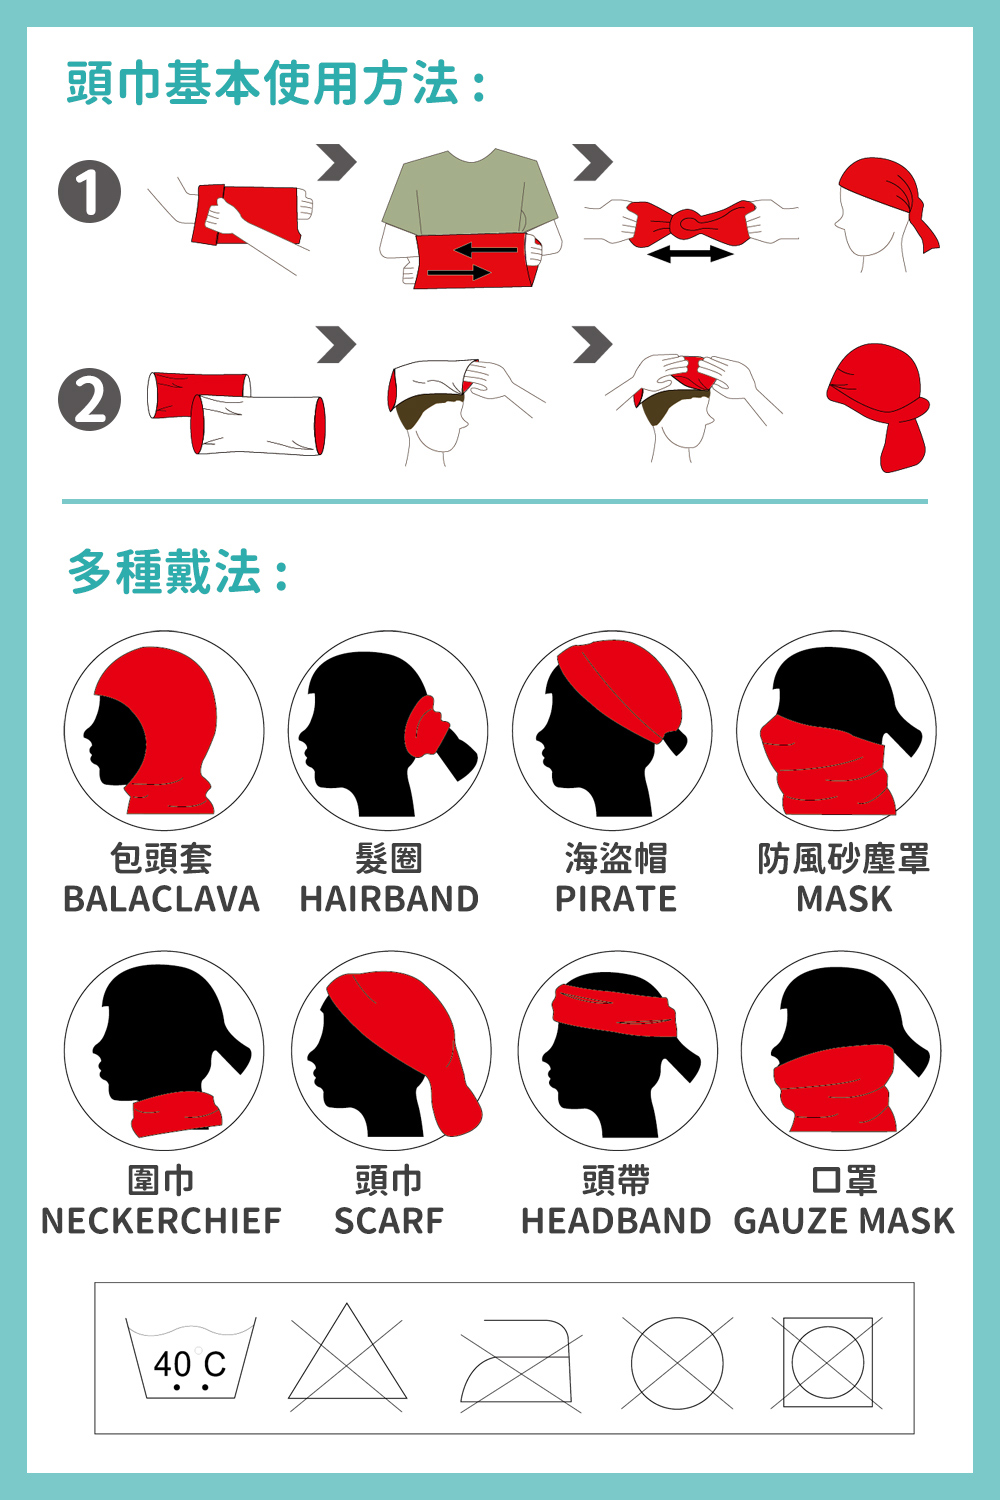 頭巾基本使用方法